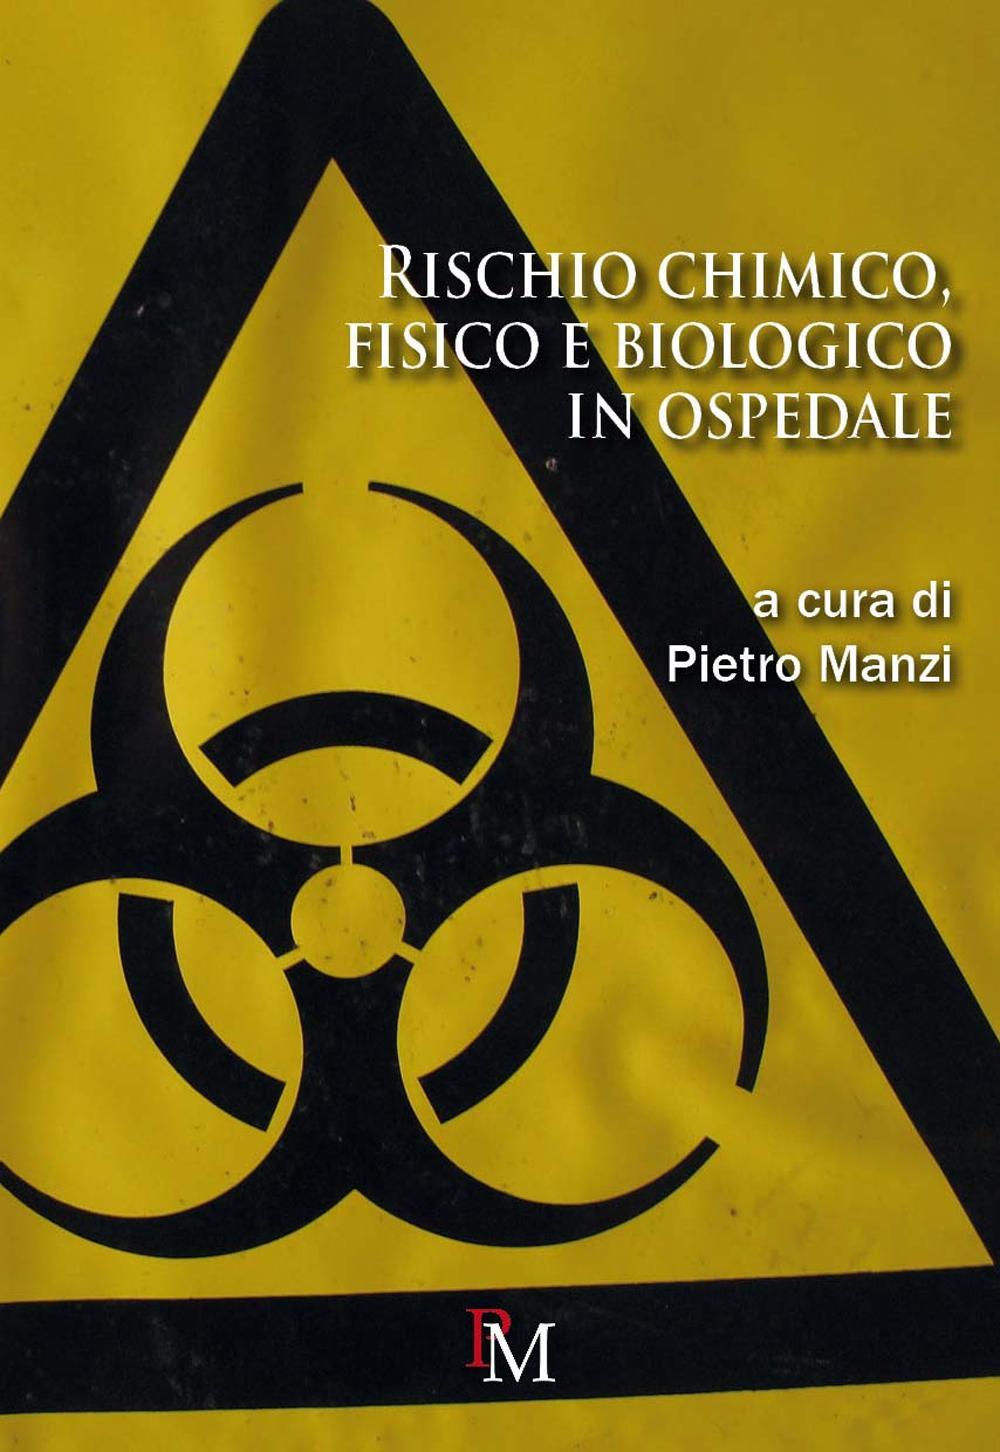 Knjiga Rischio chimico, fisico e biologico in ospedale 